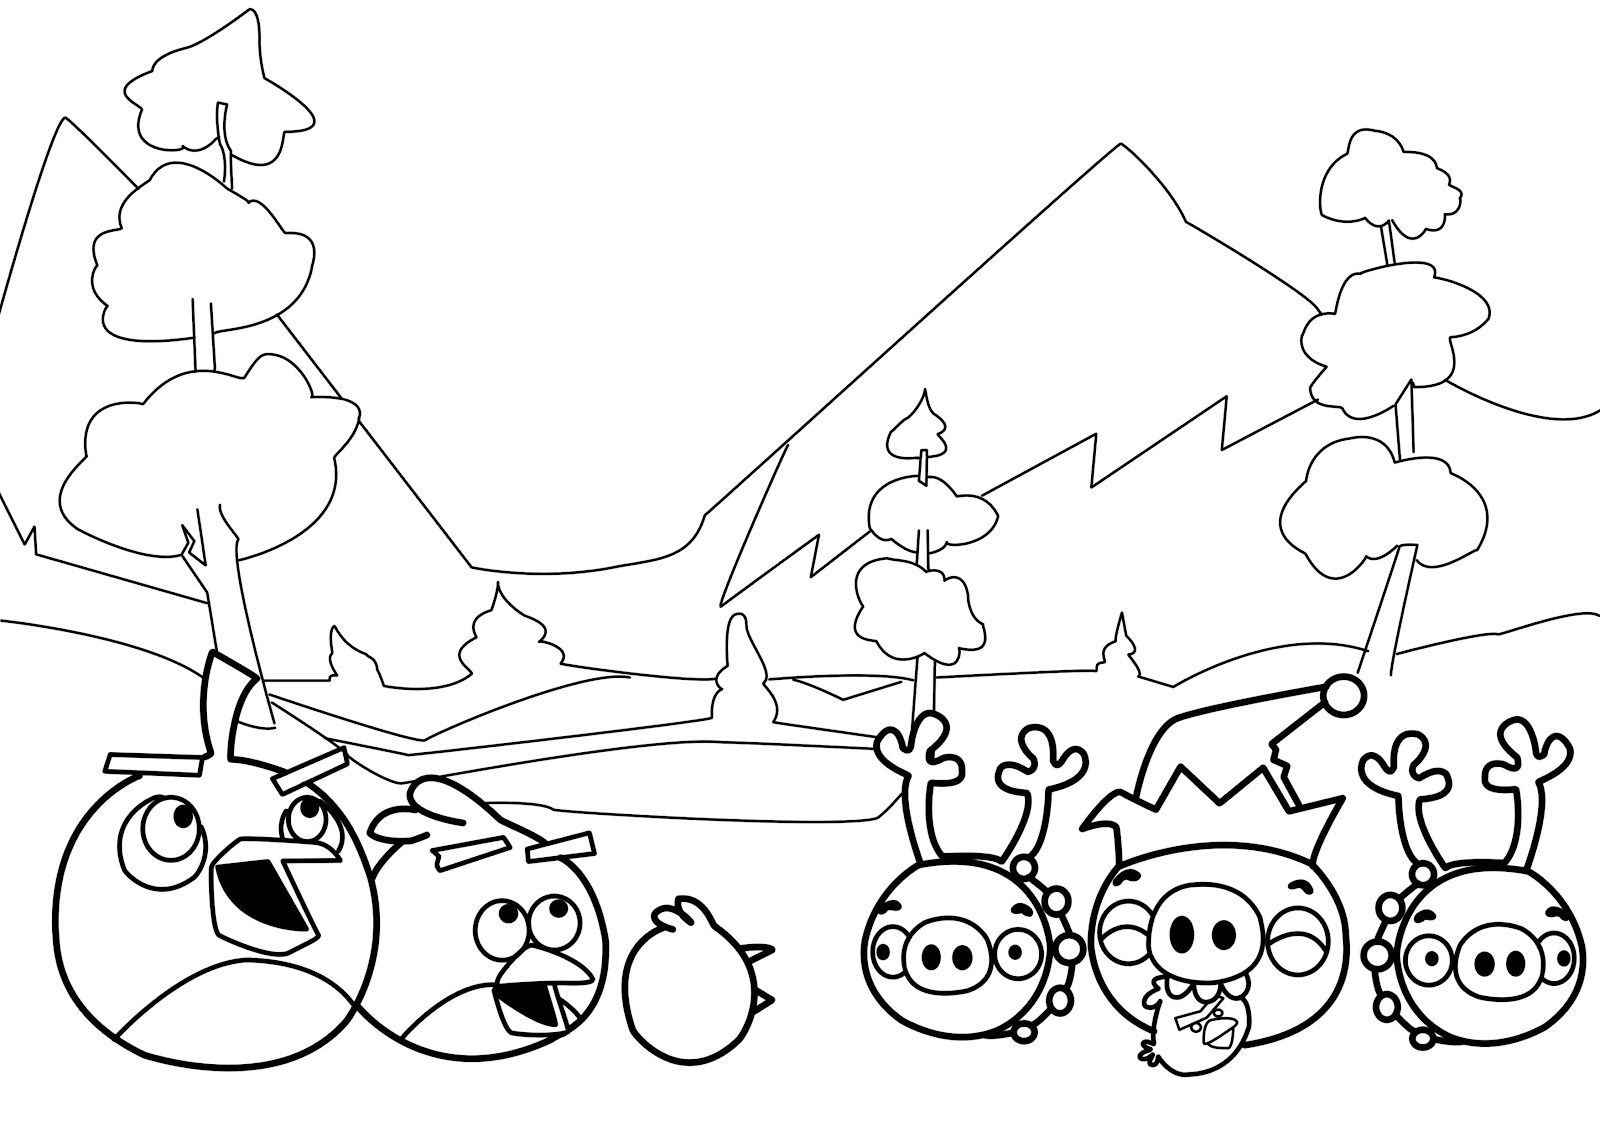 Disegni da colorare gratis Angry Birds (70)